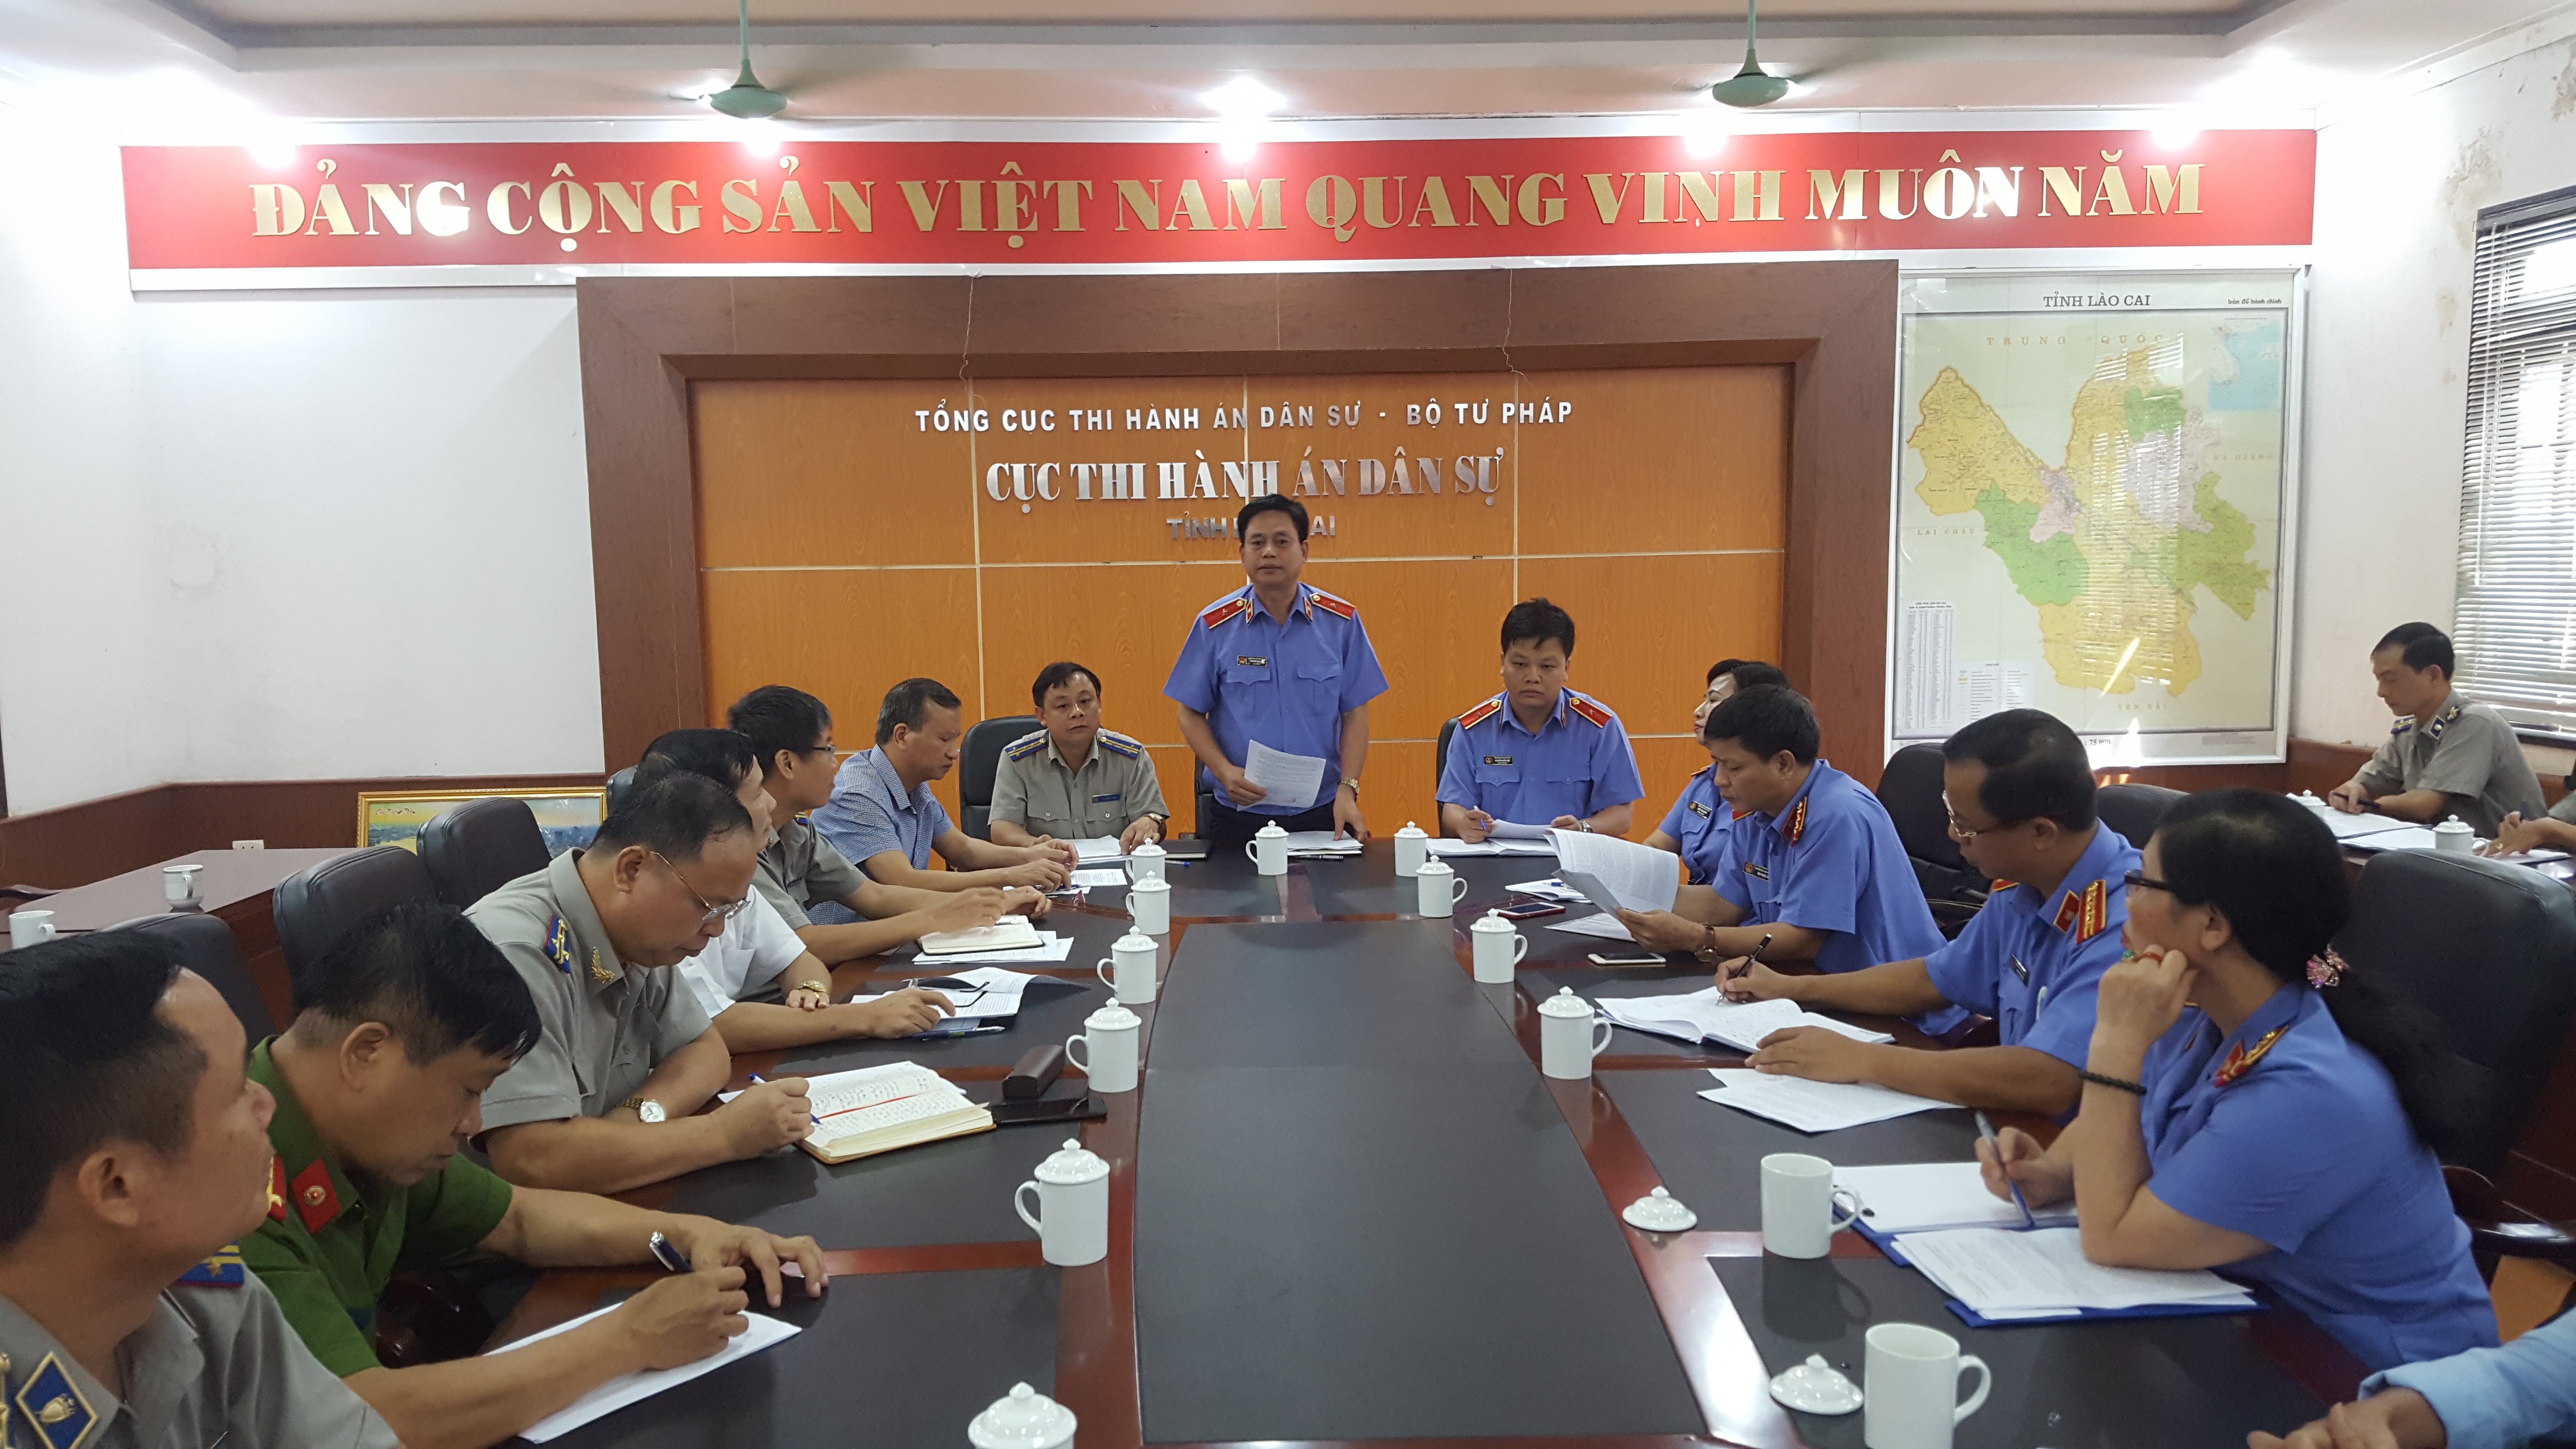 Viện kiểm sát nhân dân tối cao trực tiếp kiểm sát việc tuân theo pháp luật trong hoạt động thi hành án dân sự tại Cục Thi hành án dân sự tỉnh Lào Cai